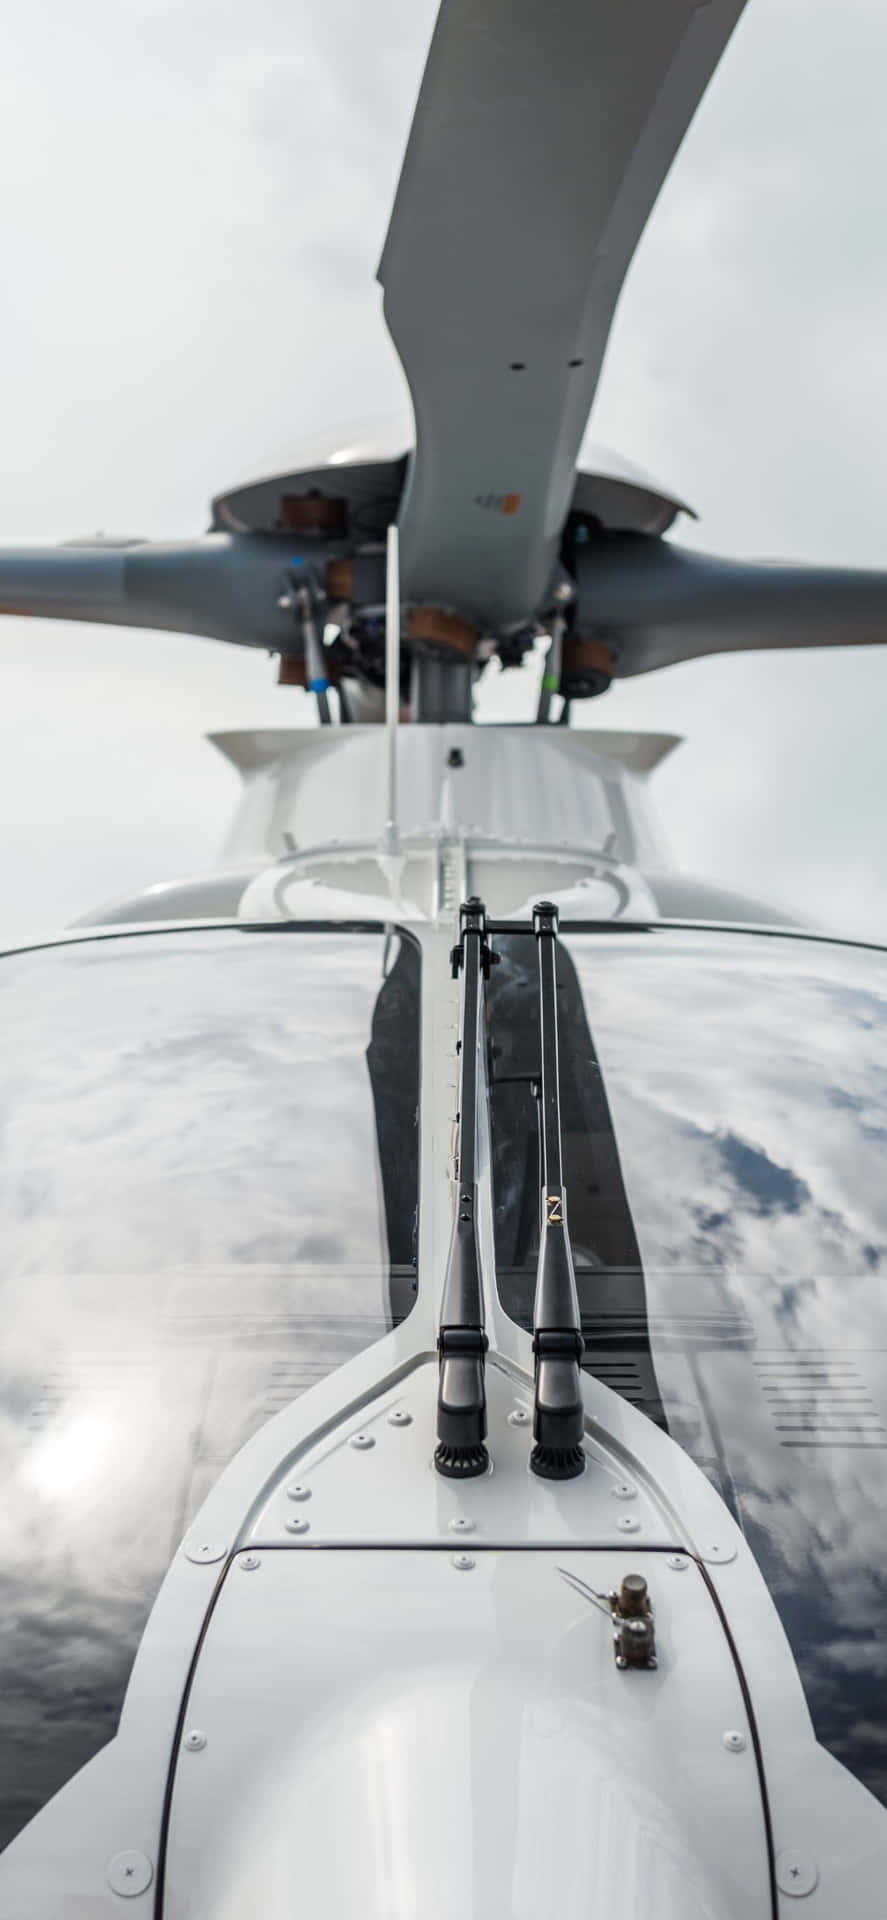 Genießensie Eine Einzigartige Perspektive Des Himmels Mit Dem Iphone Xs Max Helicopters.